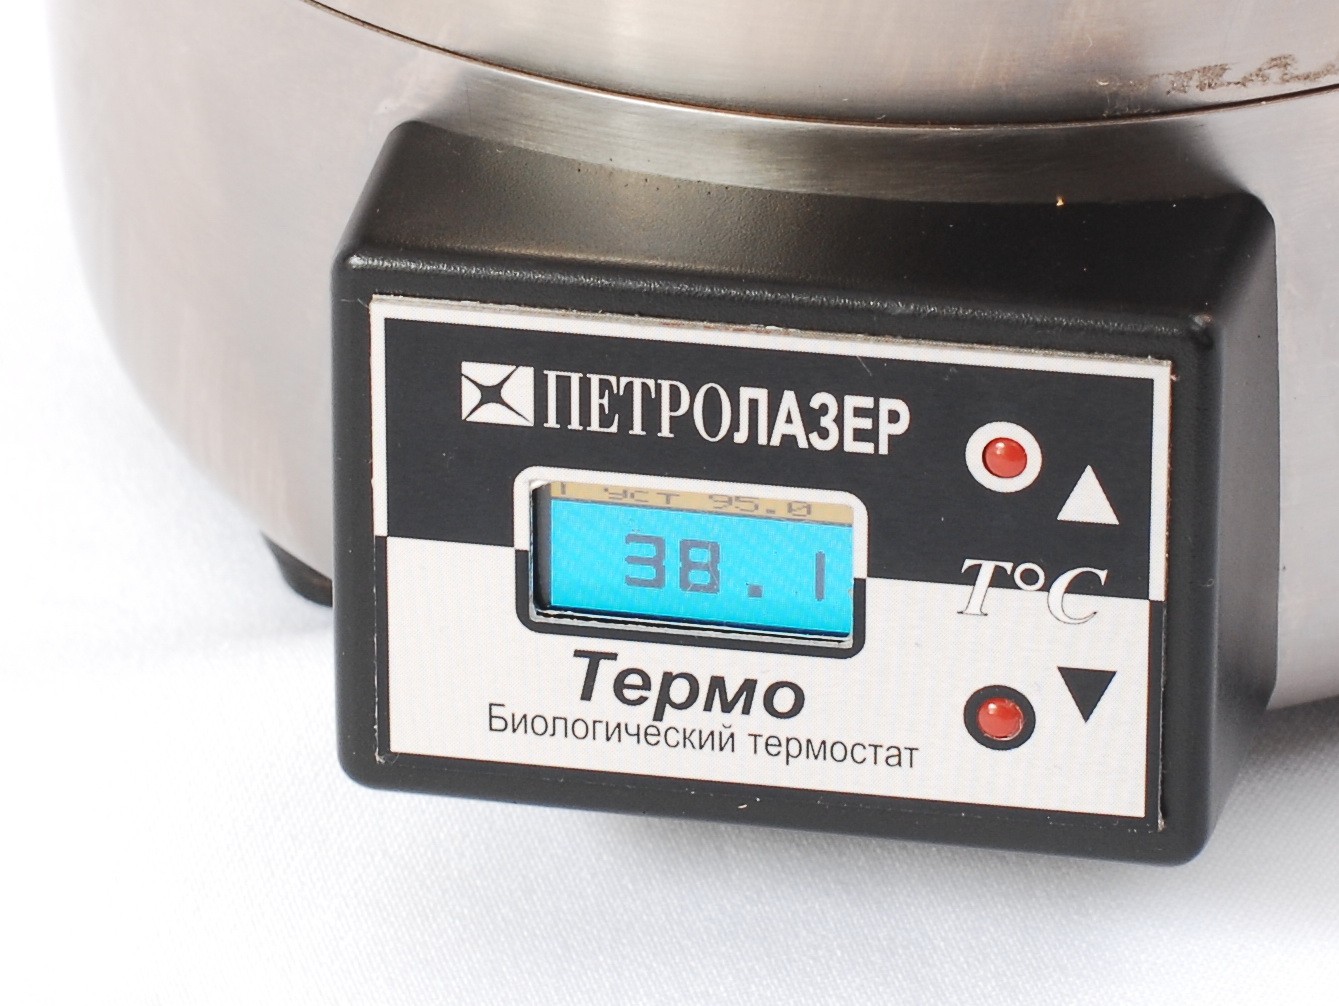 Термо — биологический термостат для поддержания постоянной температуры